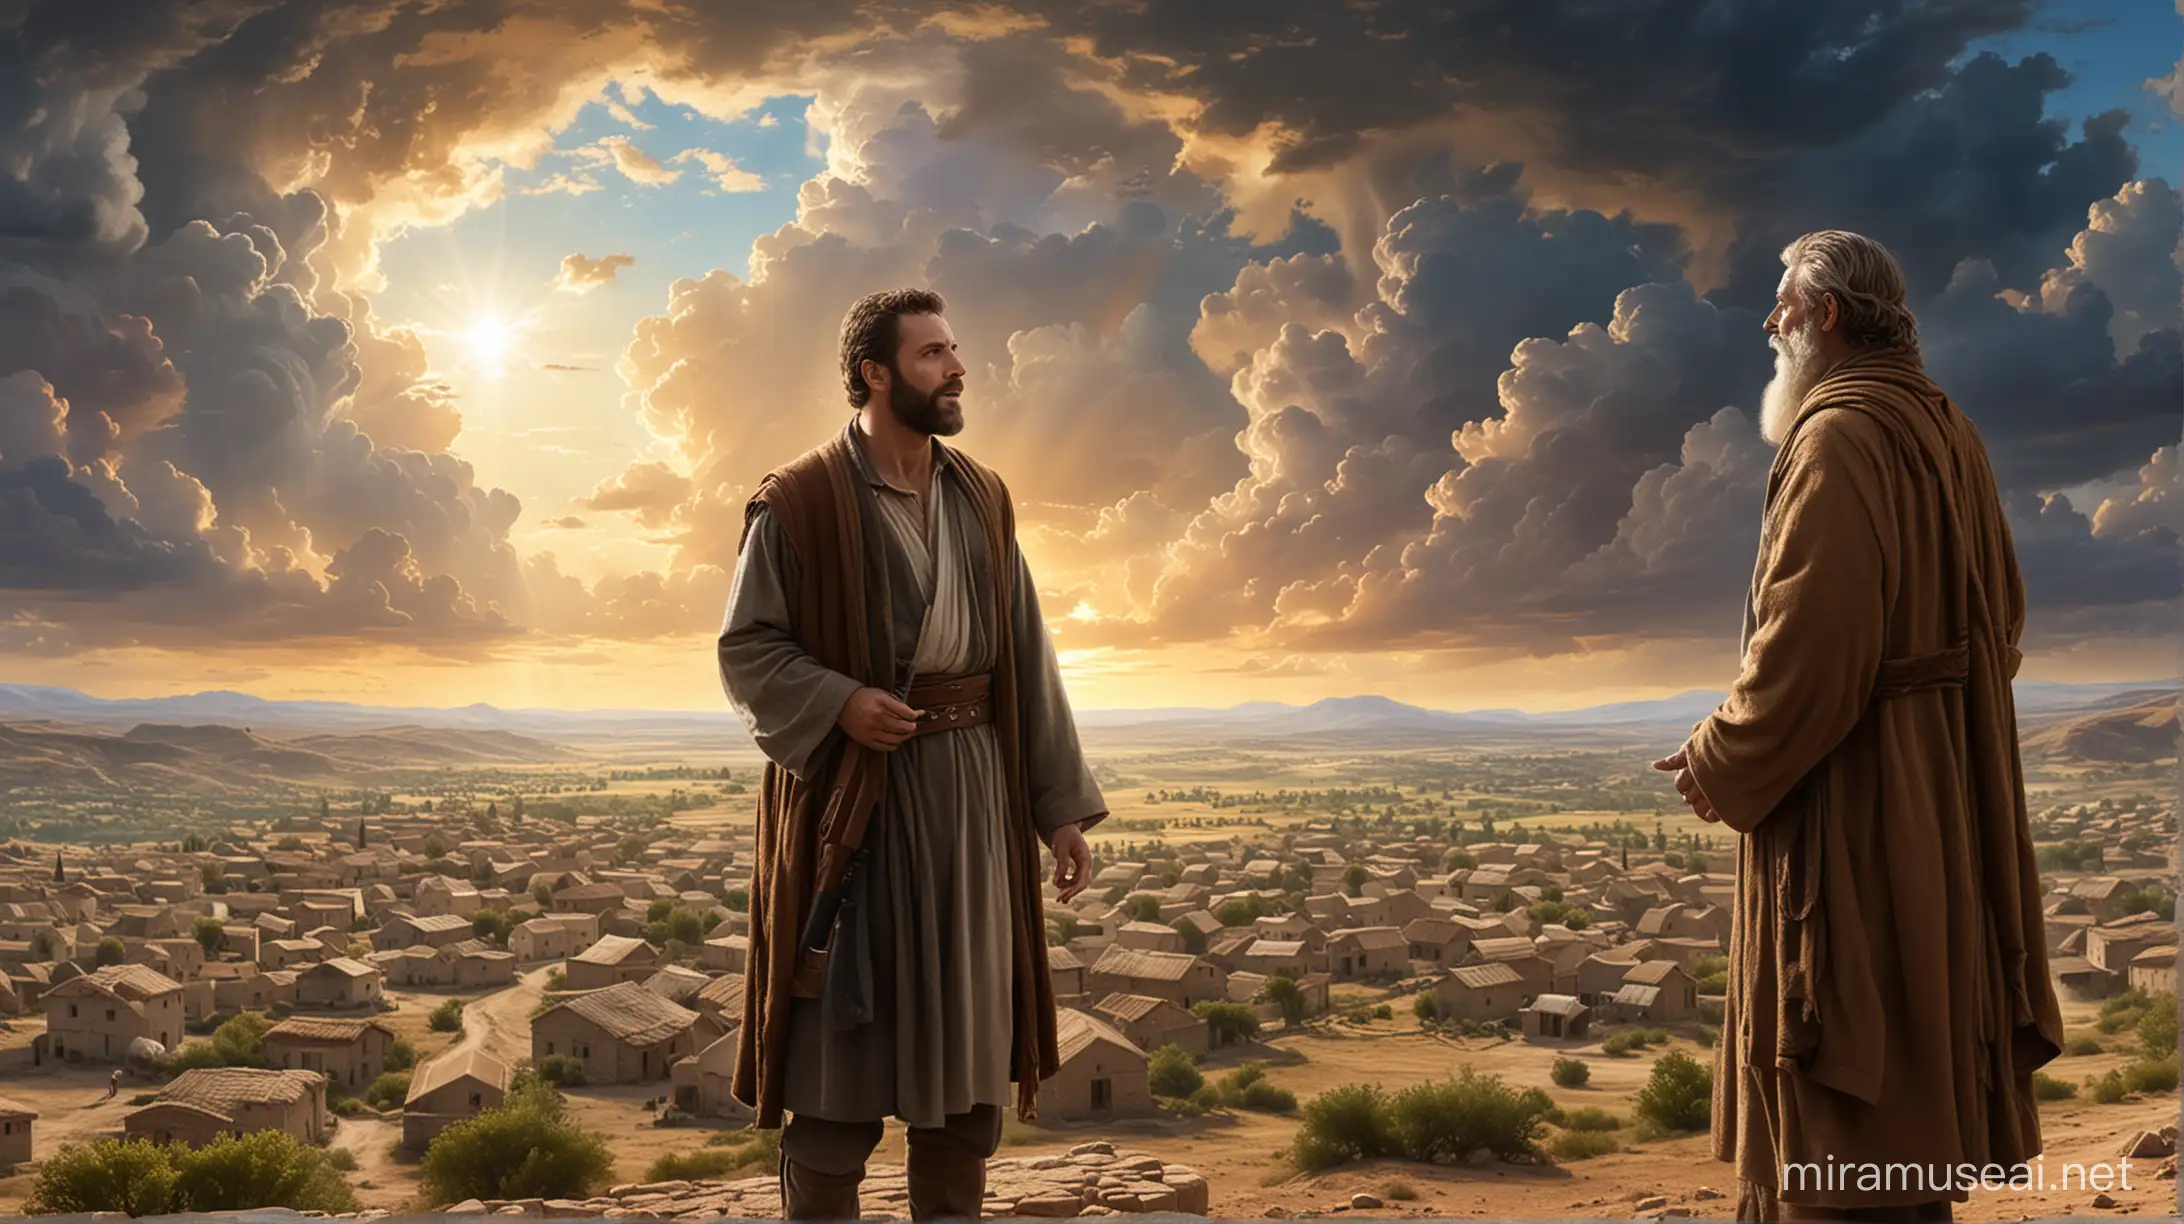 Abraham in Divine Conversation overlooking Village under Majestic Sky